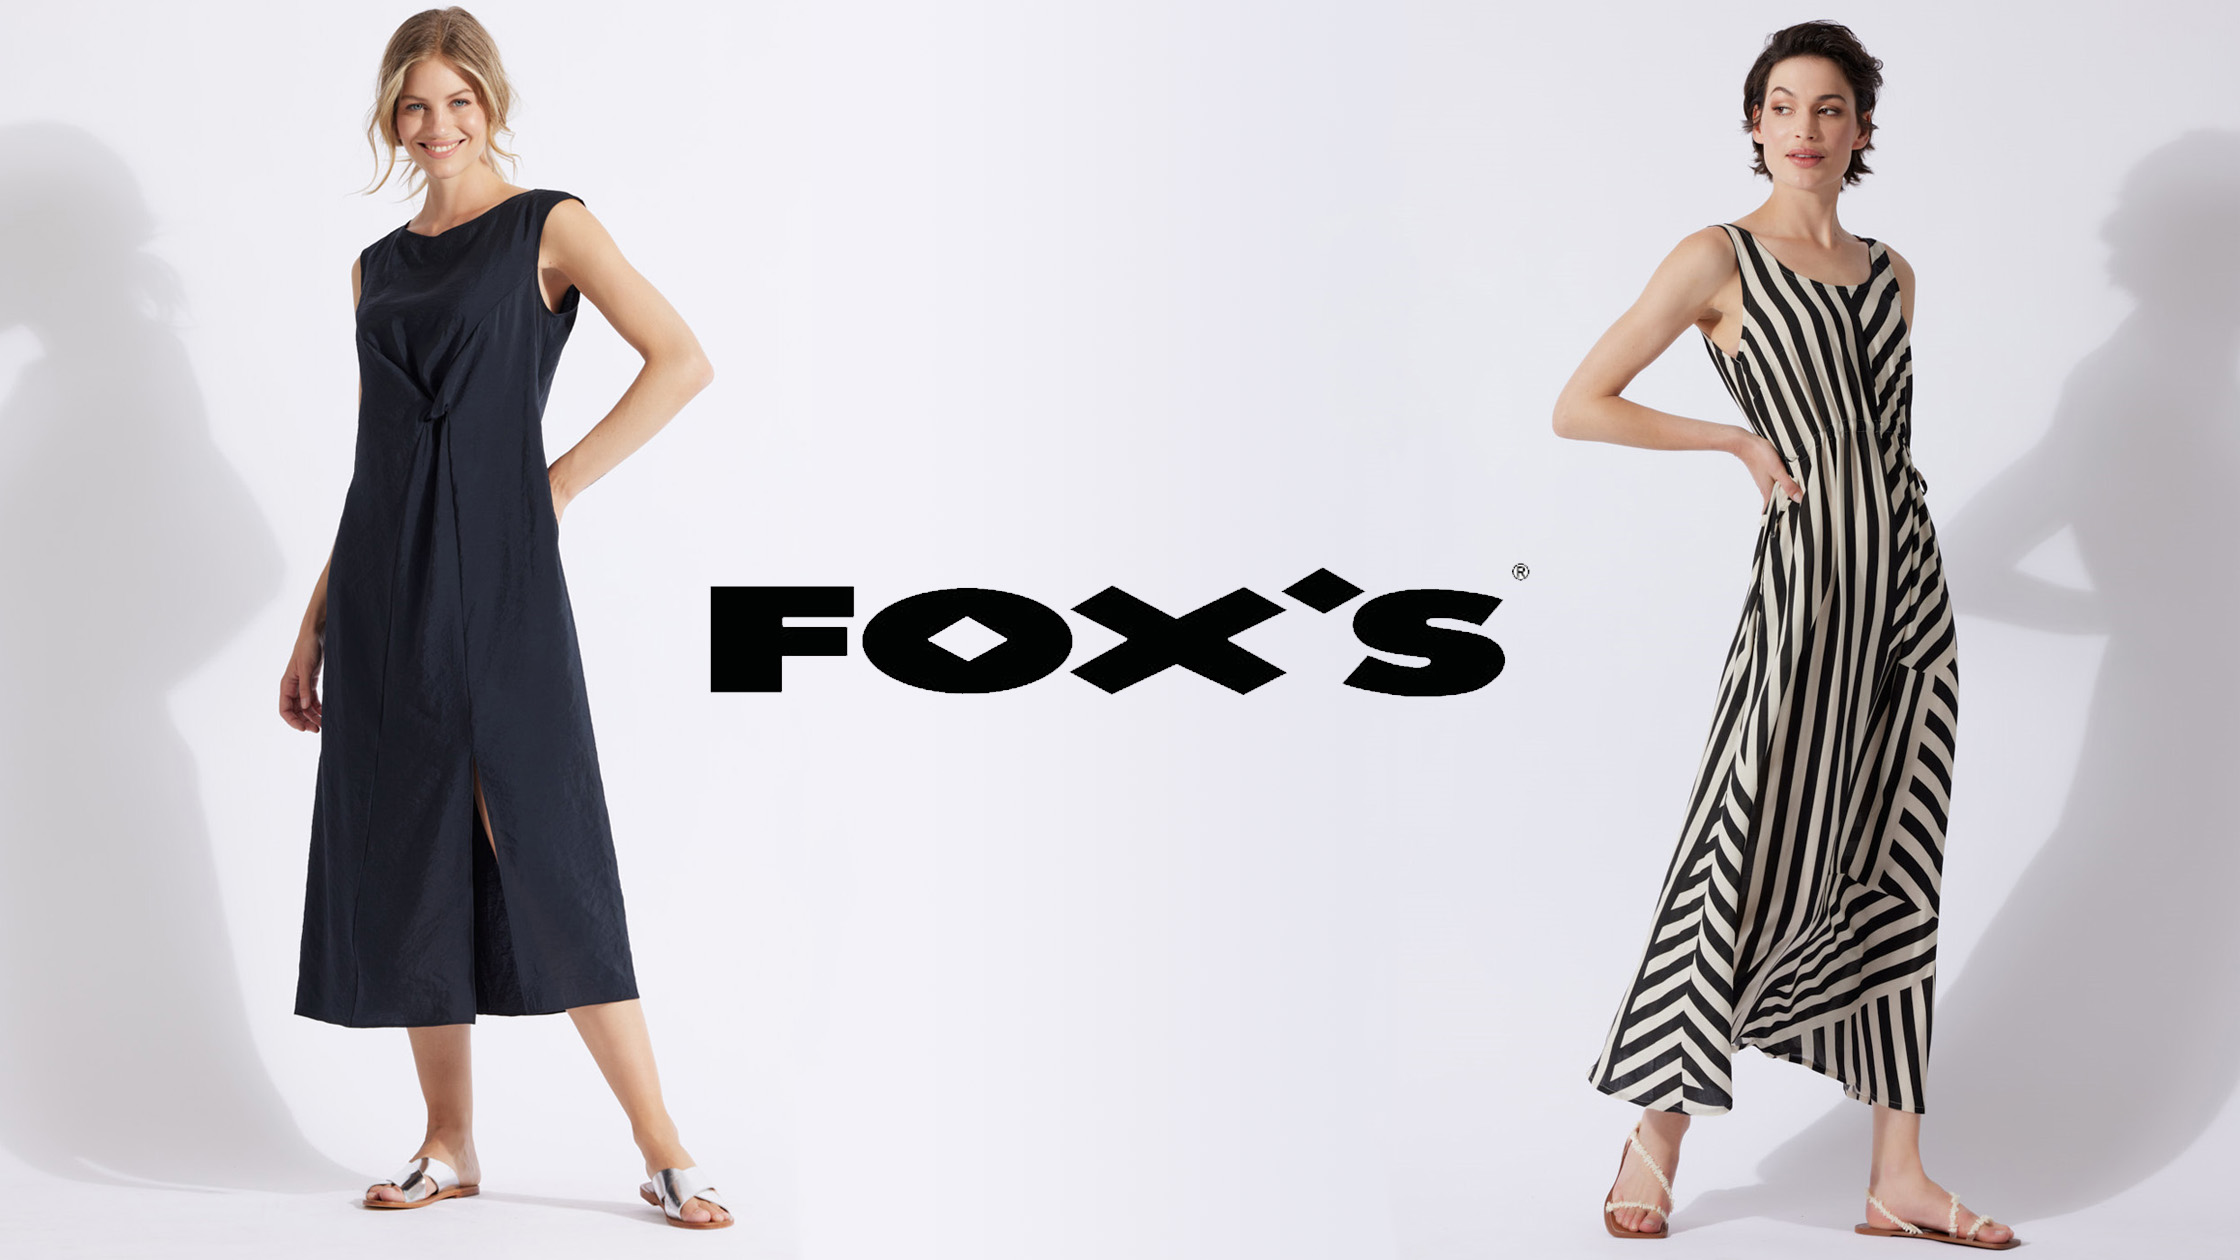 Fox's mode. De collectie van Fox bestaat voor het grootste gedeelde uit jurken. Vrouwen voelen zich mooi en zelfverzekerd in een kledingstuk van Foxs.